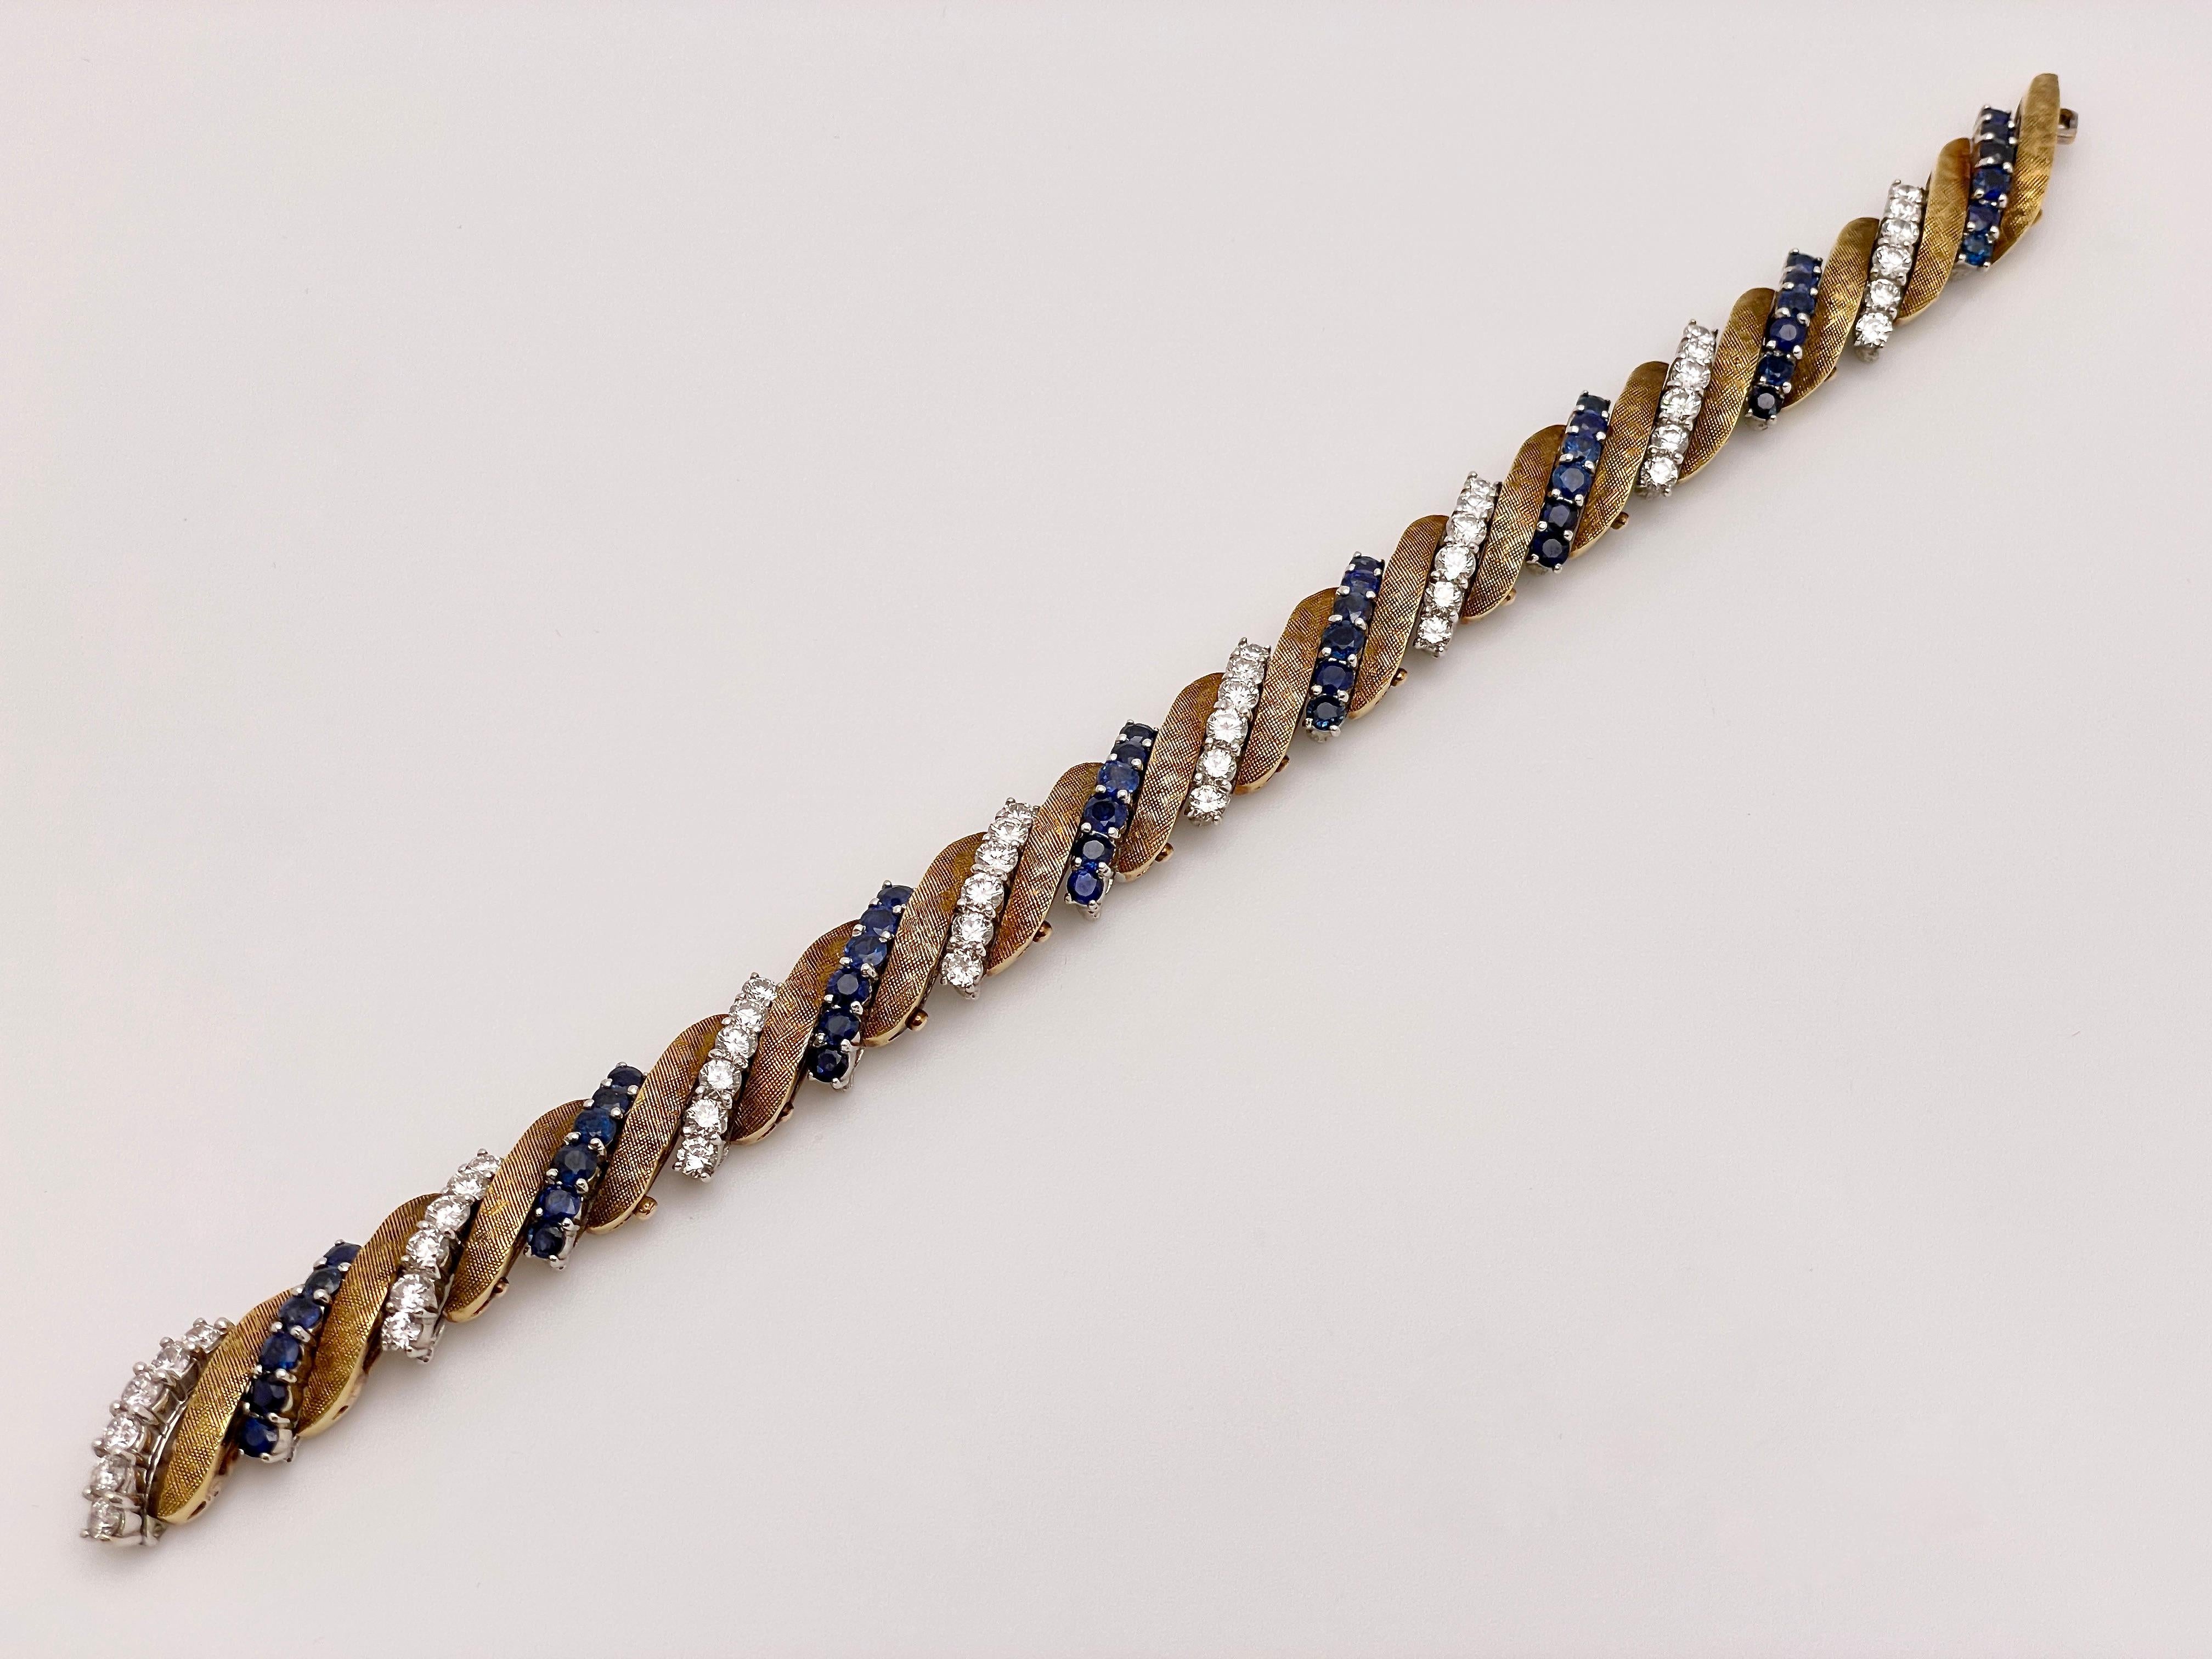 Un bracelet original et ancien en or blanc et jaune 14K avec des diamants et des saphirs. Il comporte huit rangées de diamants ronds de taille brillant totalisant 48, et huit rangées de saphirs ronds de taille brillant totalisant également 48. Ces